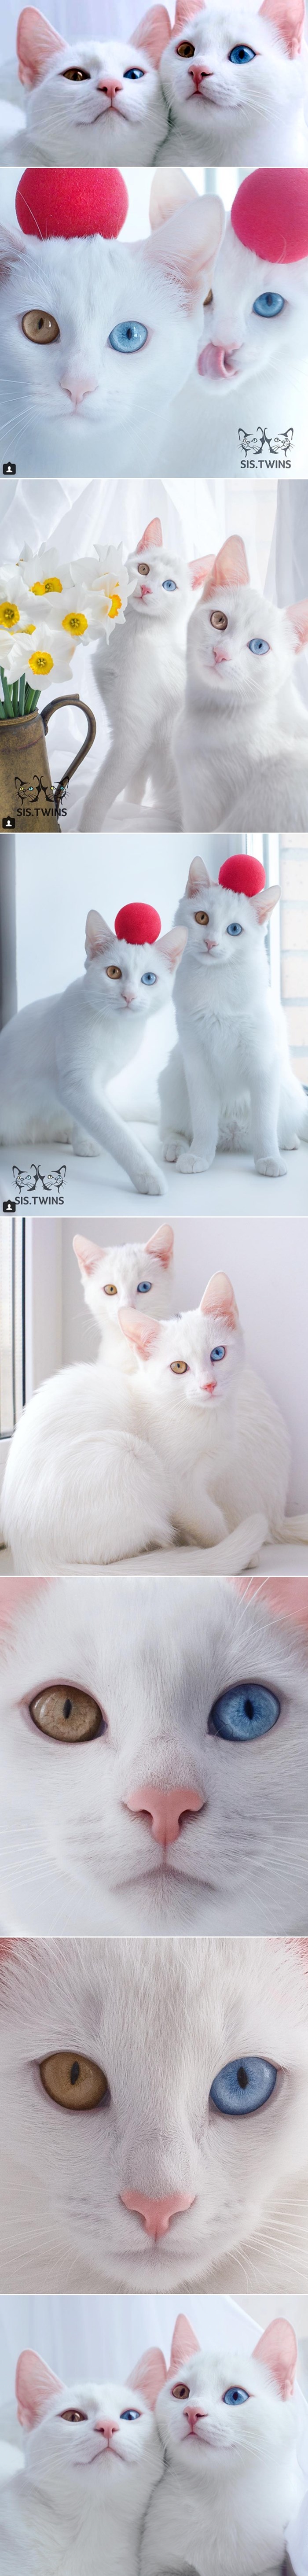 Izgubite se u ljepoti šarenih okica ove dvije mace blizanke